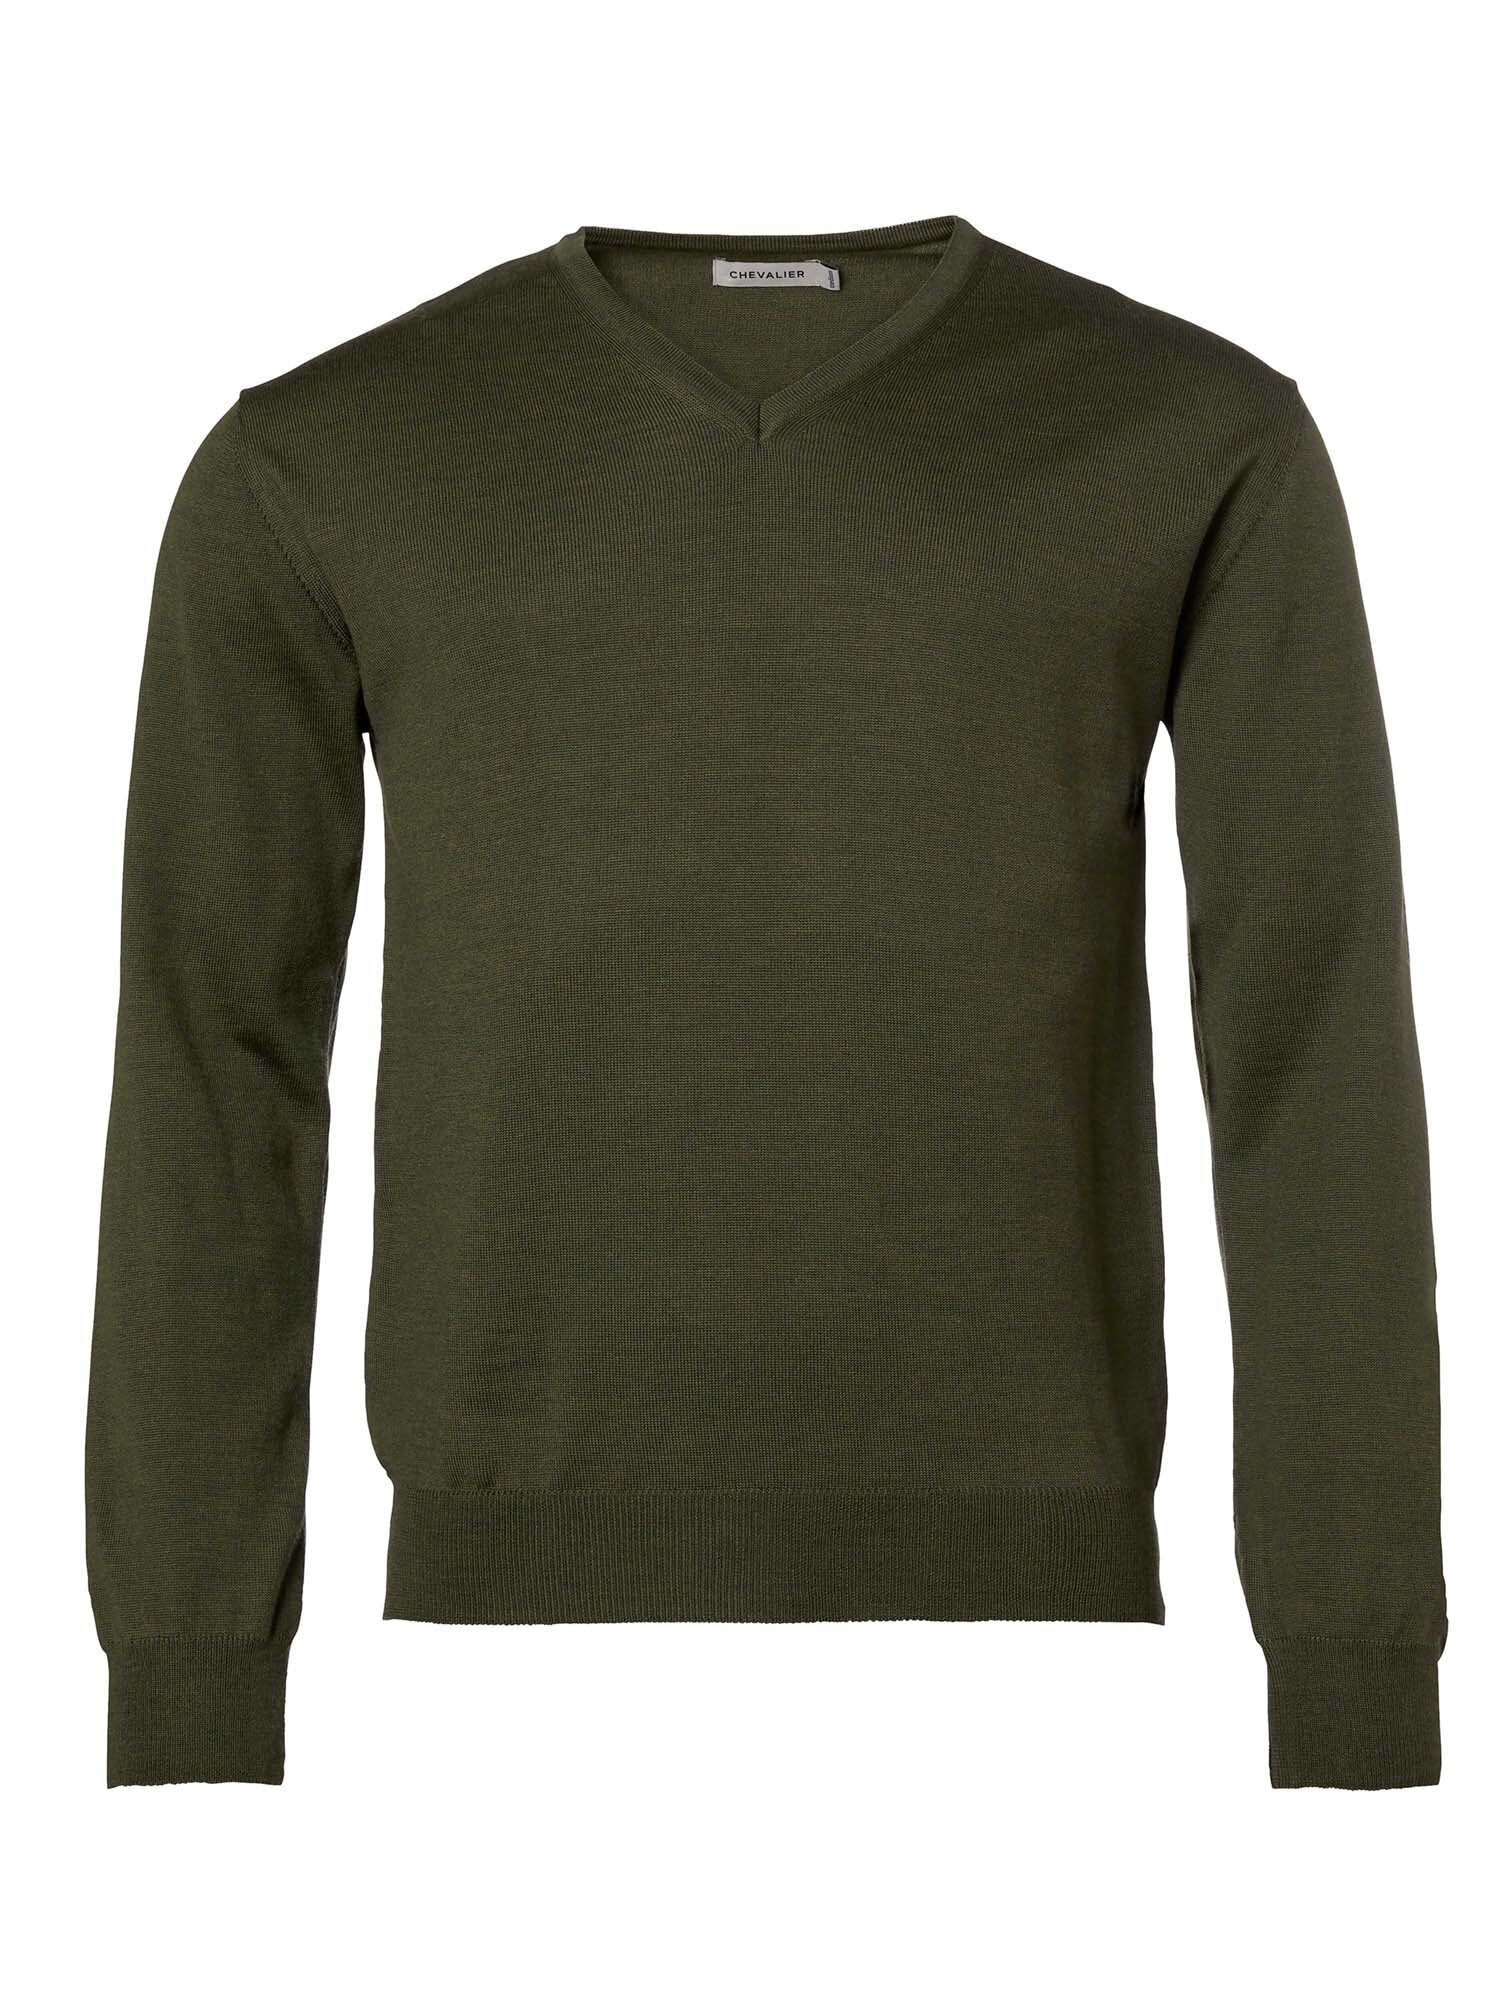 Shop wool sweaters for men & women online - Chevalier